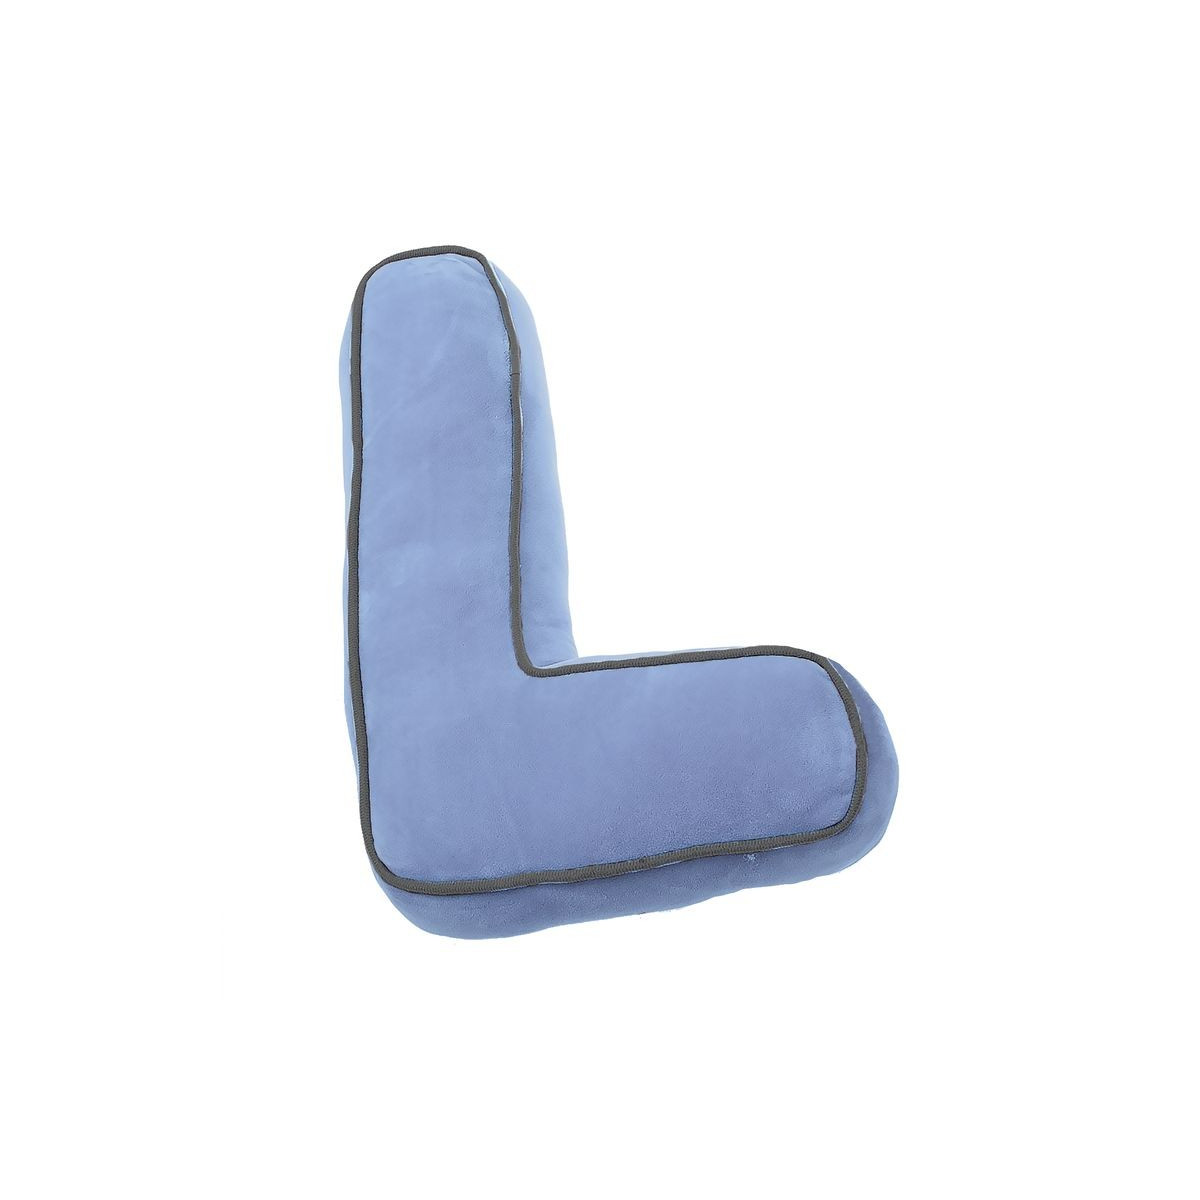 Cuscino a forma di lettera l blu